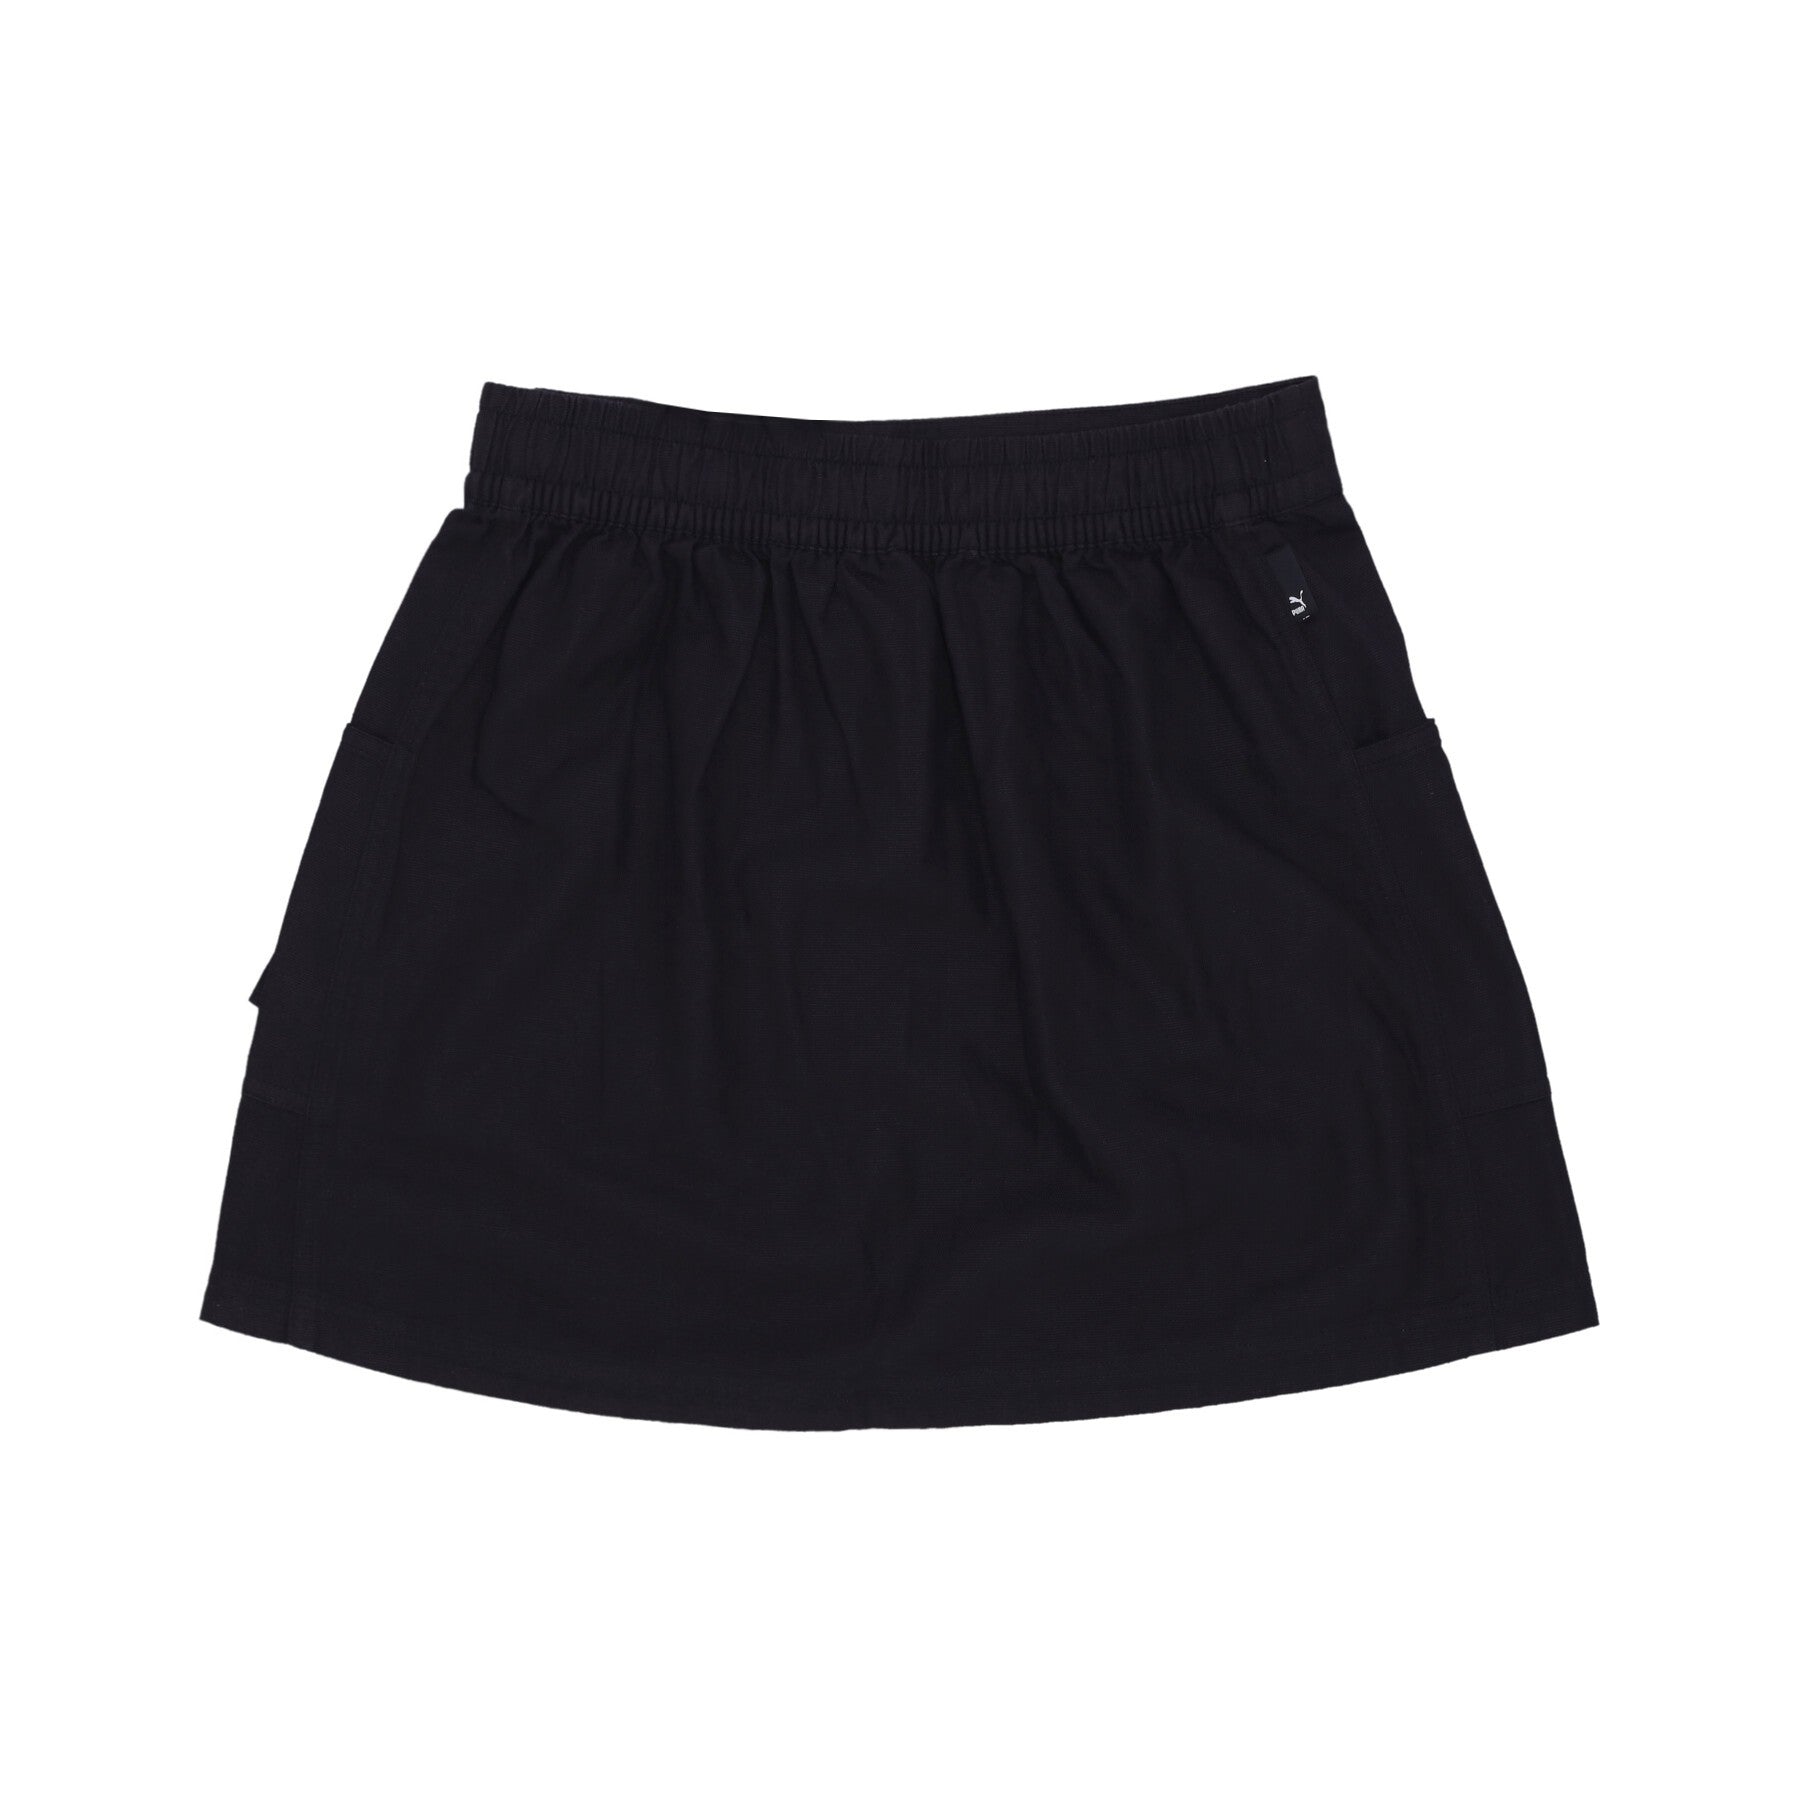 Short Skirt Women Downtown Skirt Black